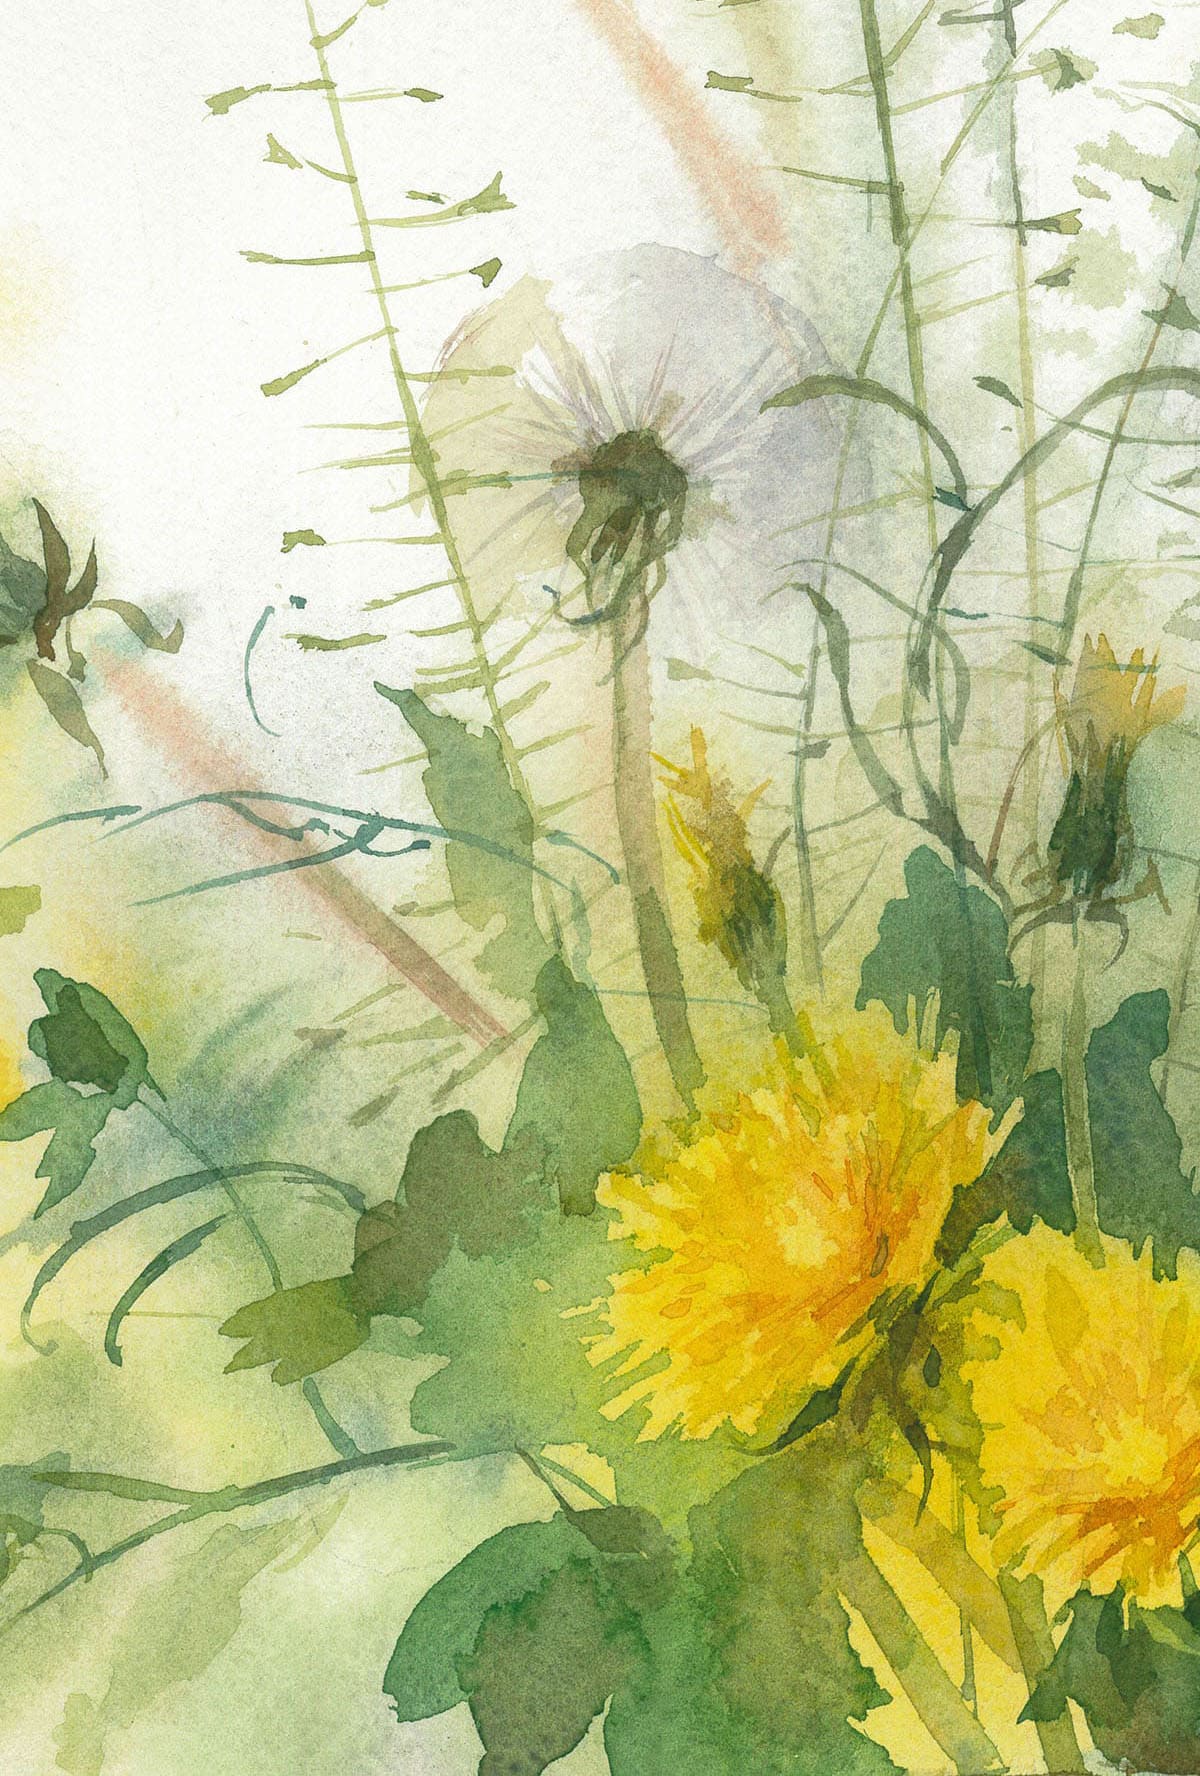 Dandelion Floral Watercolor Clipart – MasterBundles